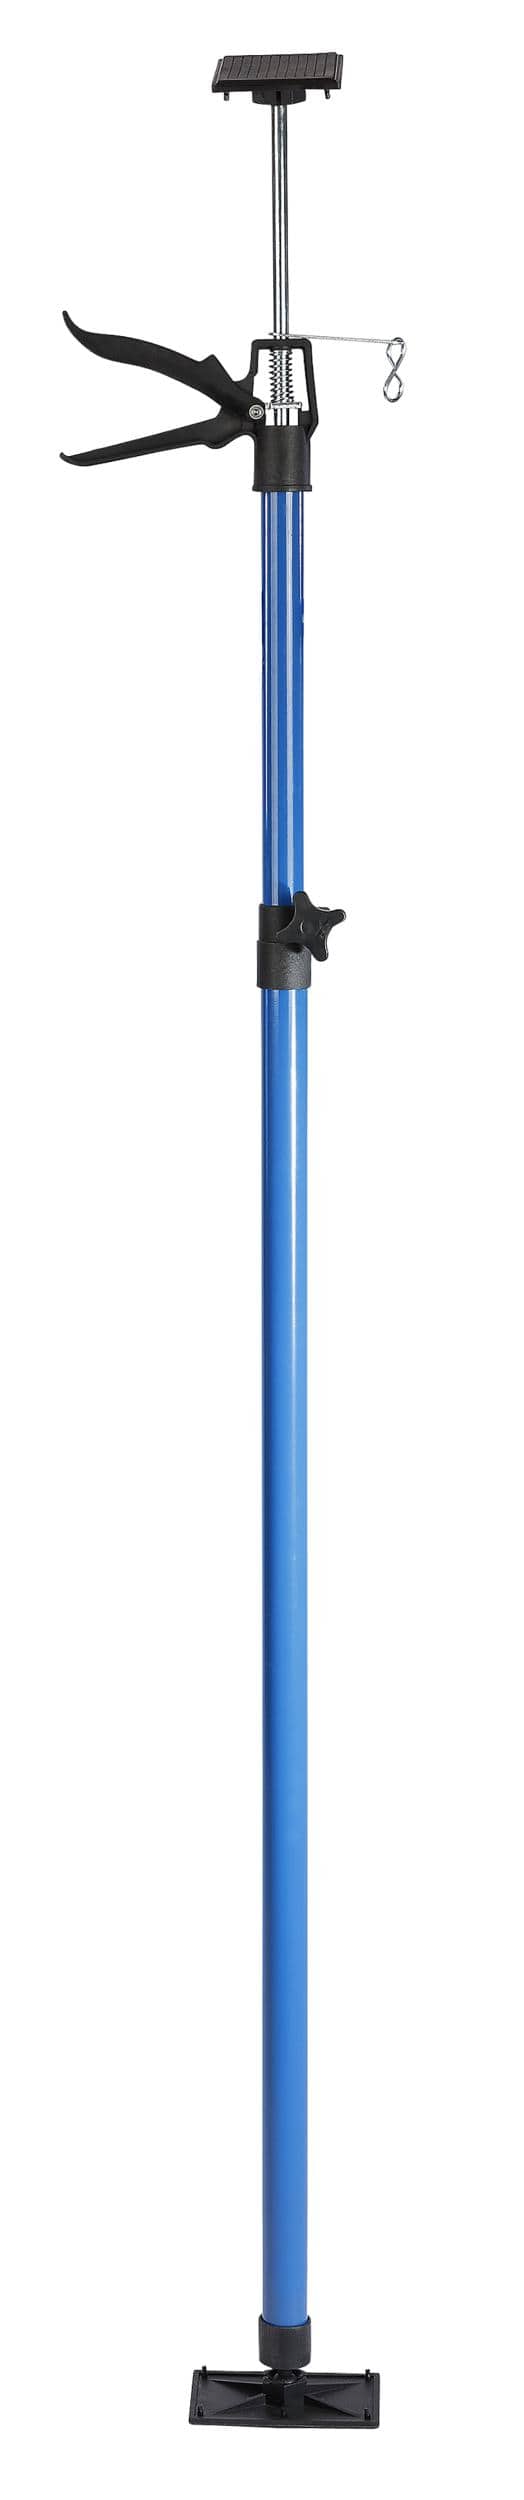 Westfalia Schnellspann-Stütze 115-290 cm